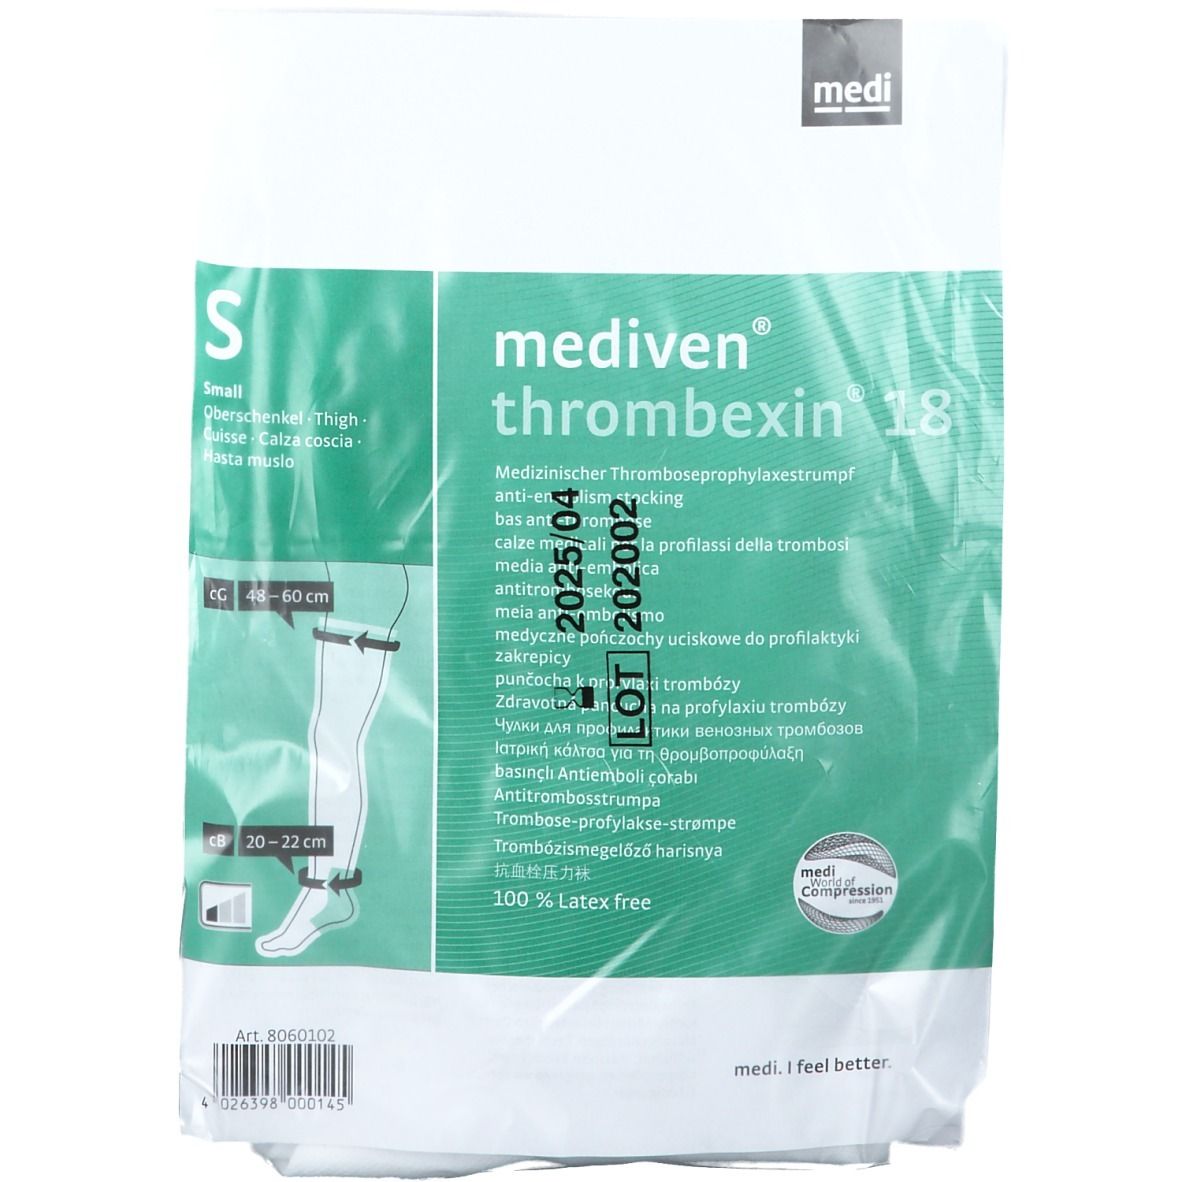 mediven® Thrombexin 18 mmHg medizinischer Thromboseprophylaxestrumpf Gr. S